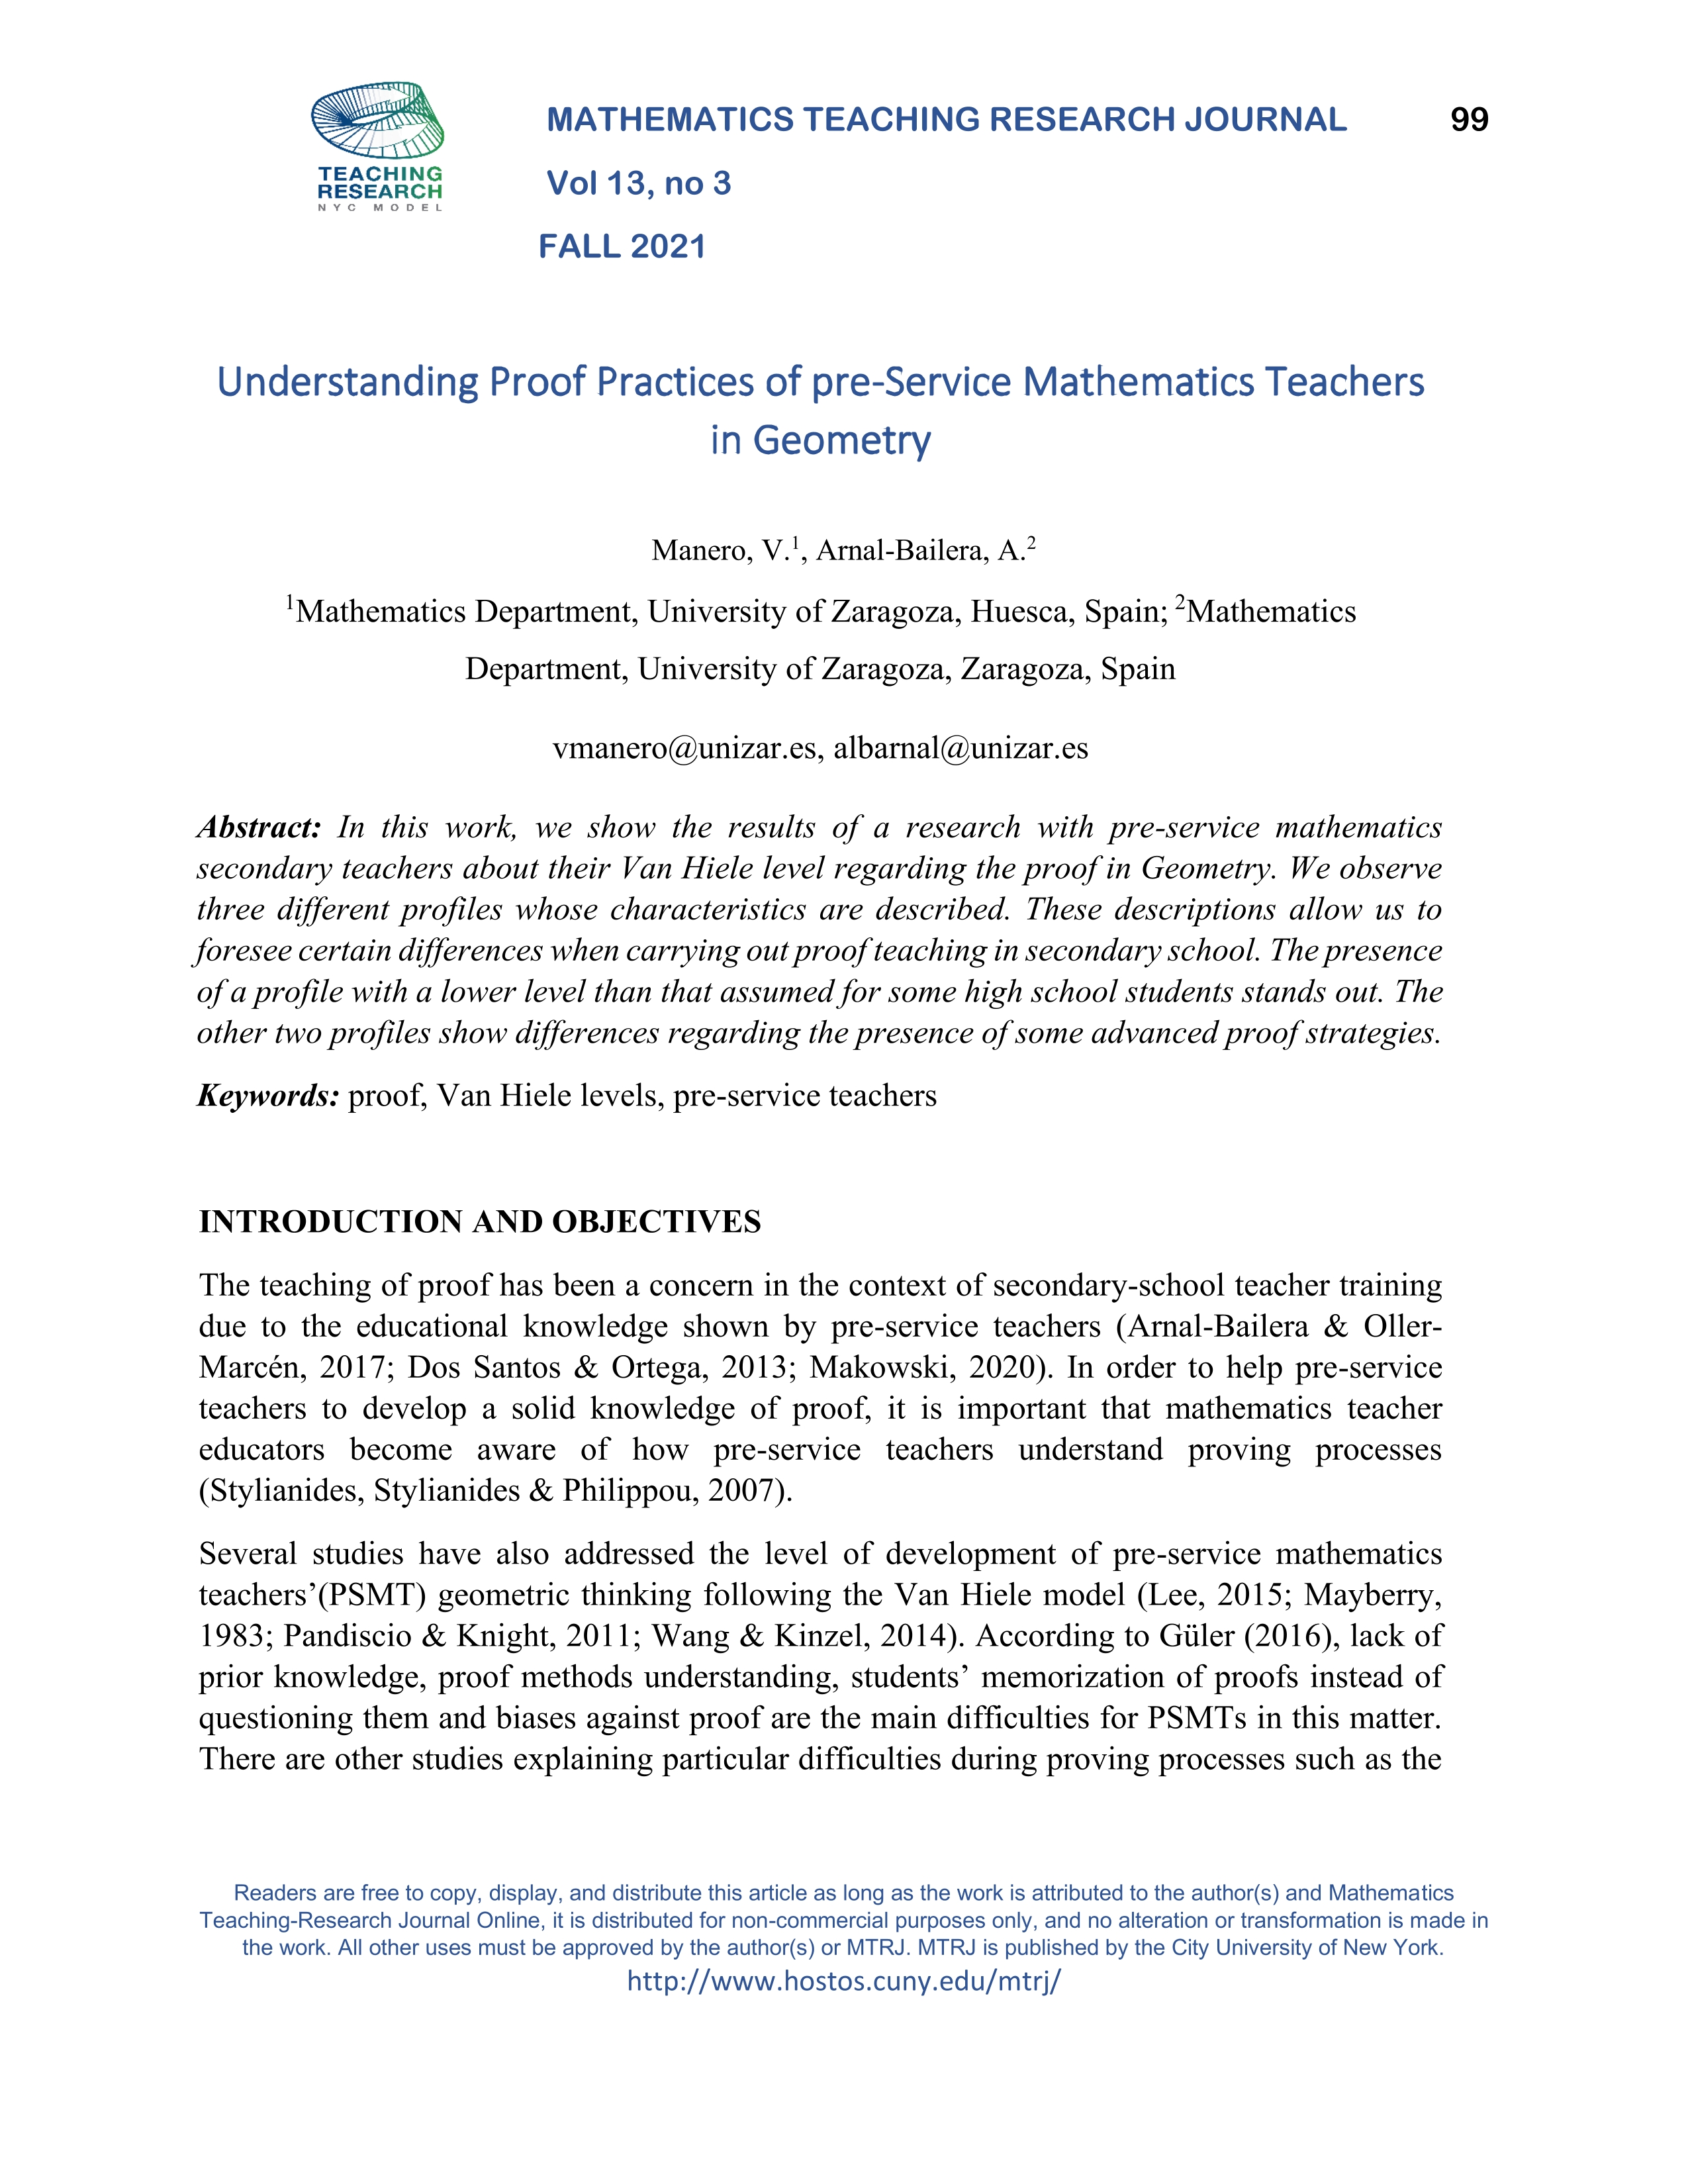 Understanding proof practices of pre-service mathematics teachers in geometry